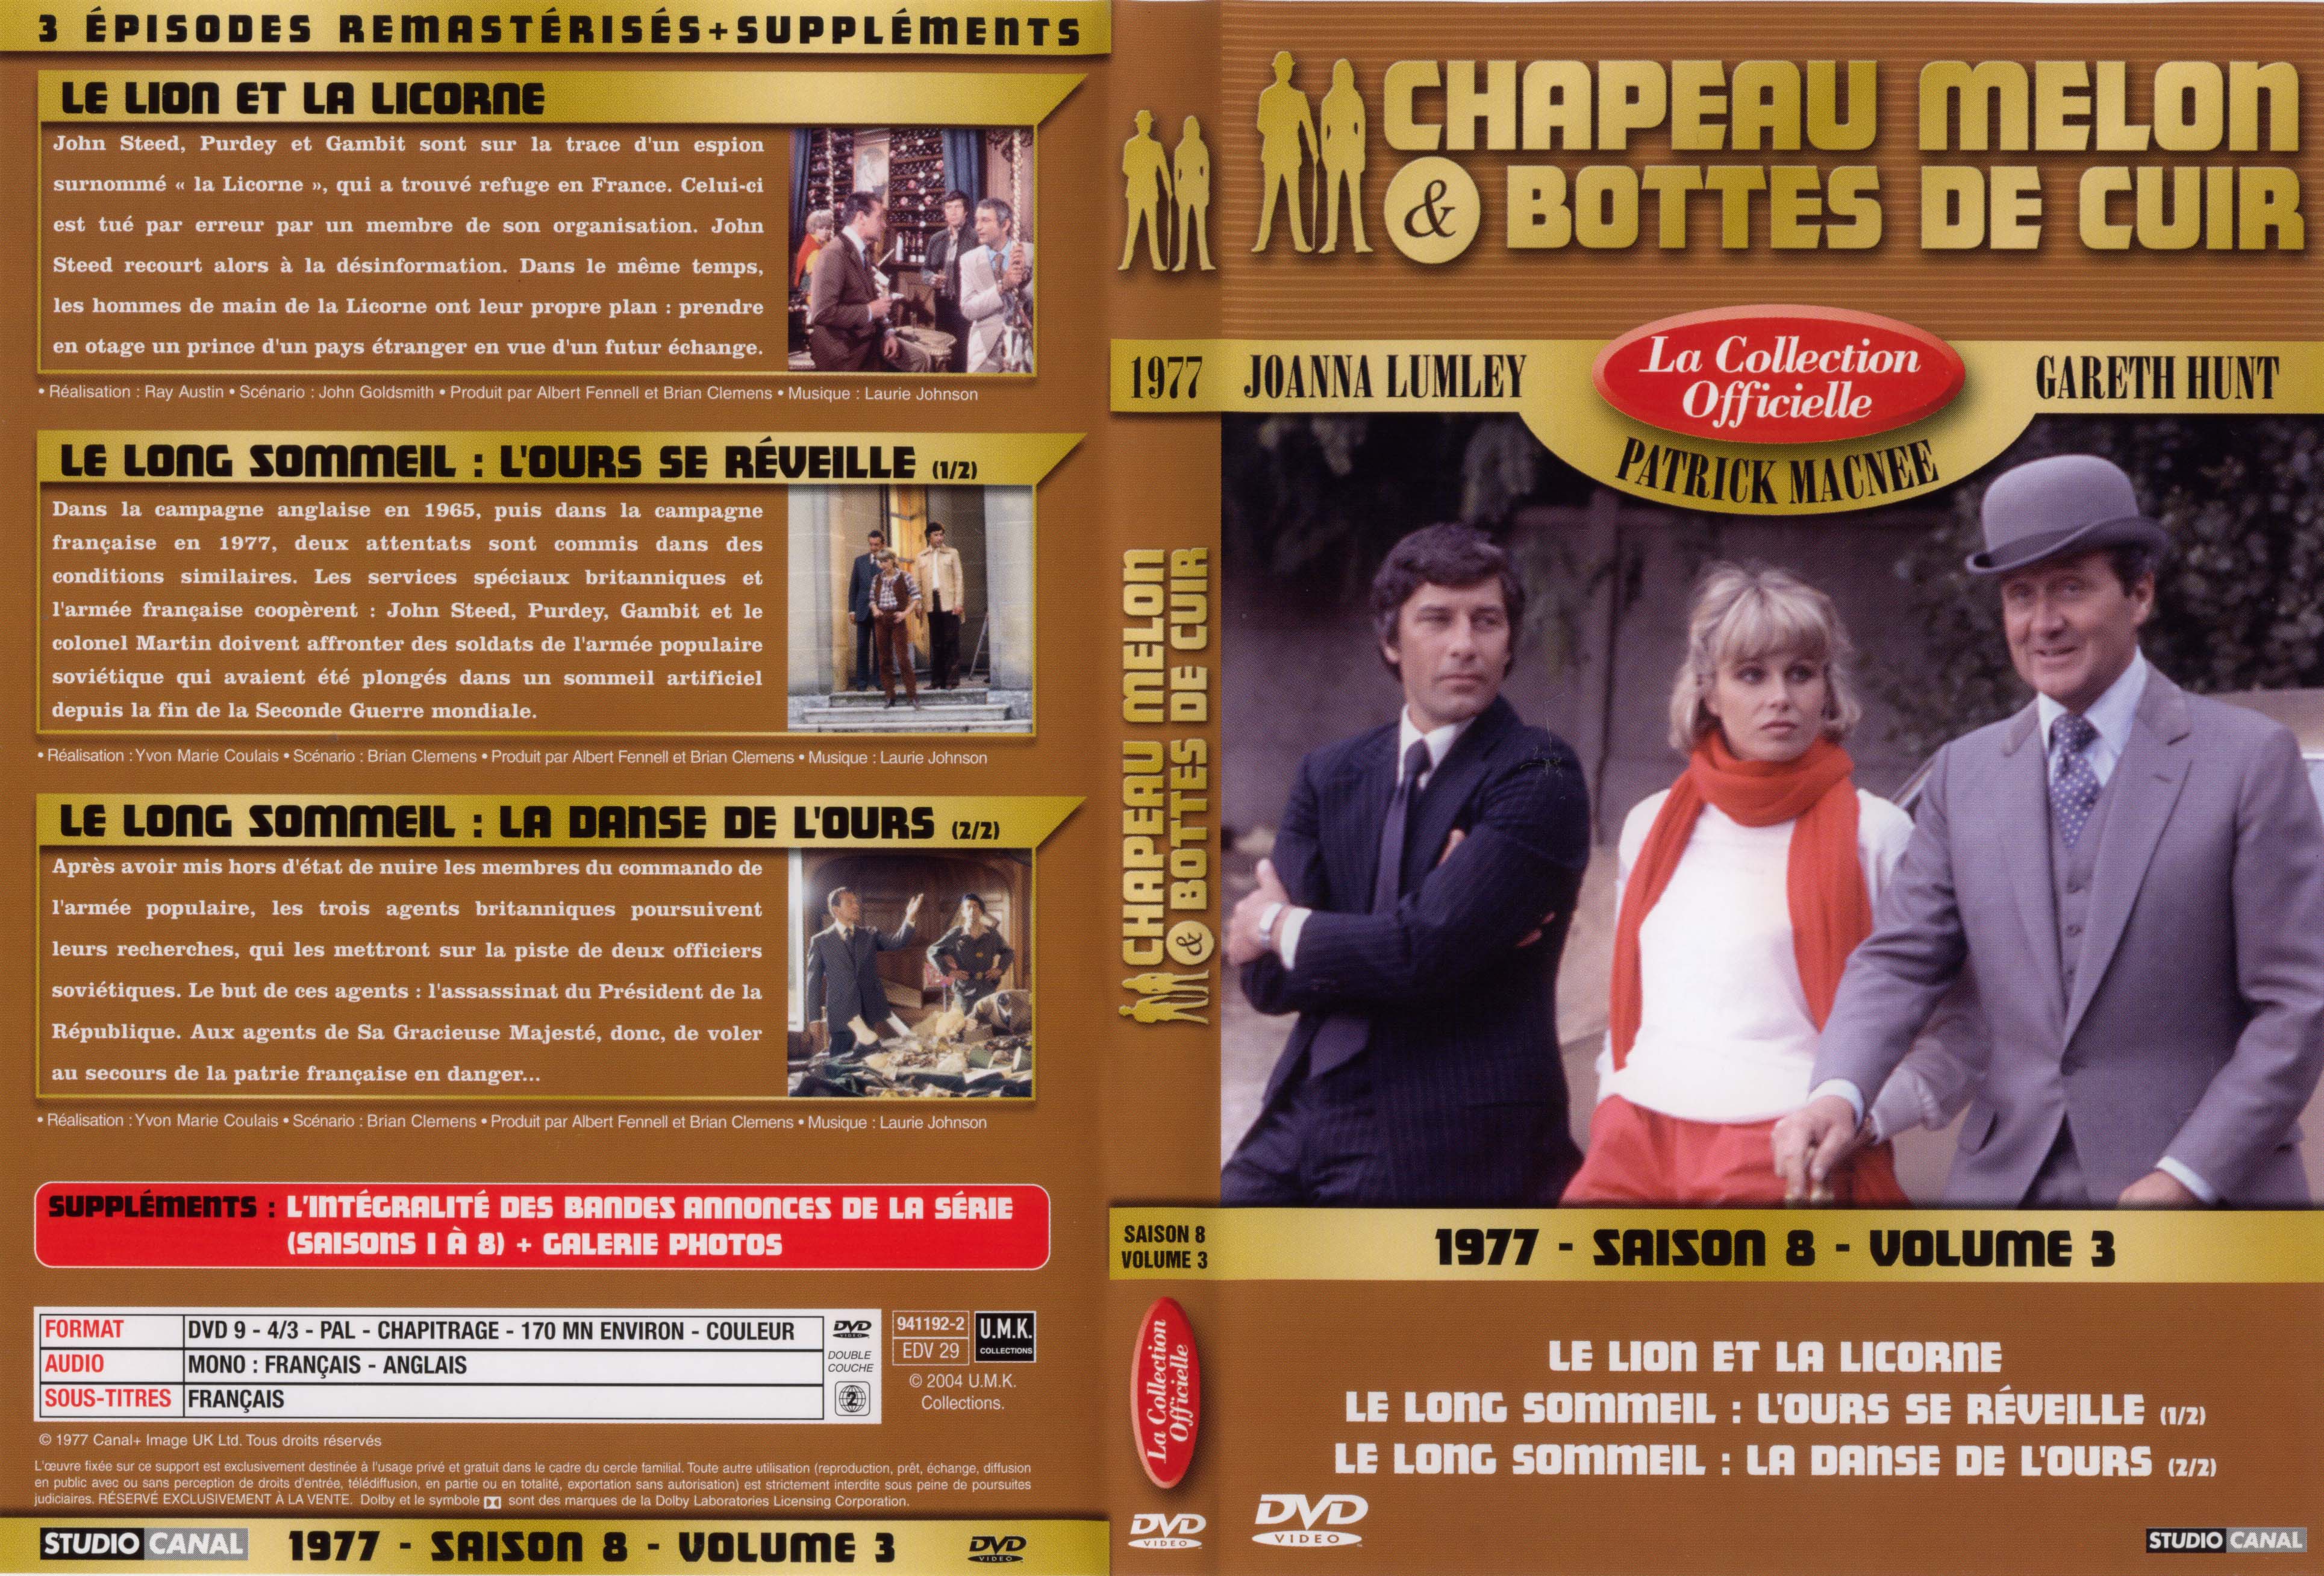 Jaquette DVD Chapeau melon et bottes de cuir 1977 saison 8 vol 3